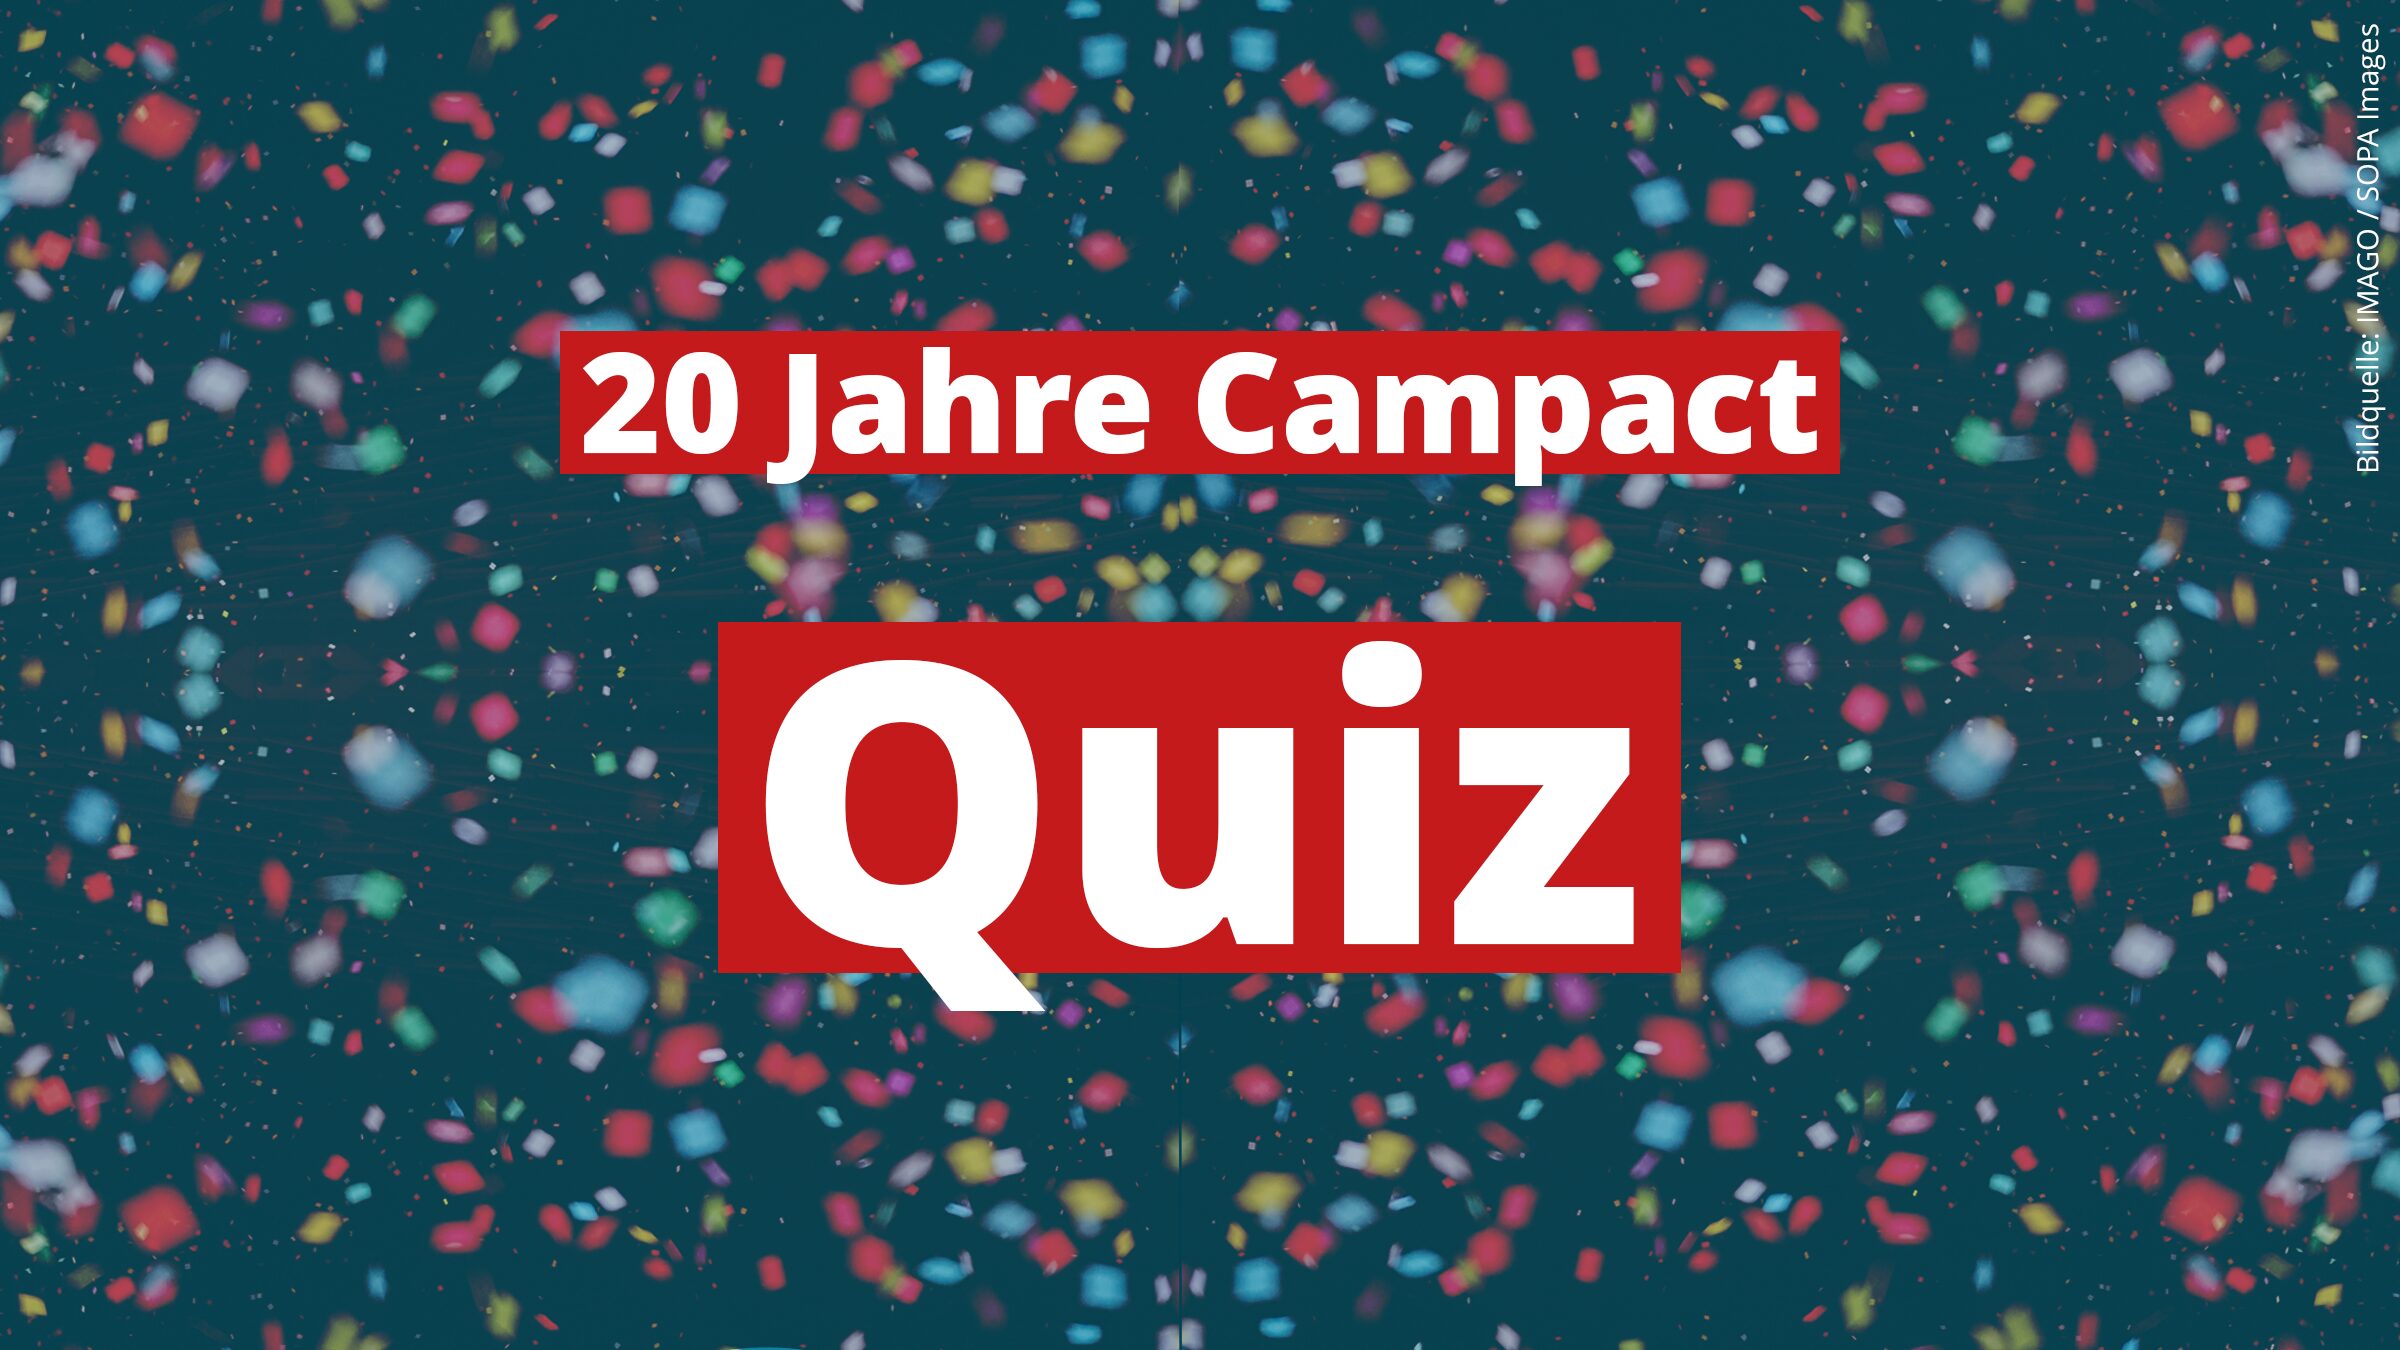 "20 Jahre Campact Quiz" steht in weißer Schrift auf rot auf einem bunten Konfetti-Hintergrund.